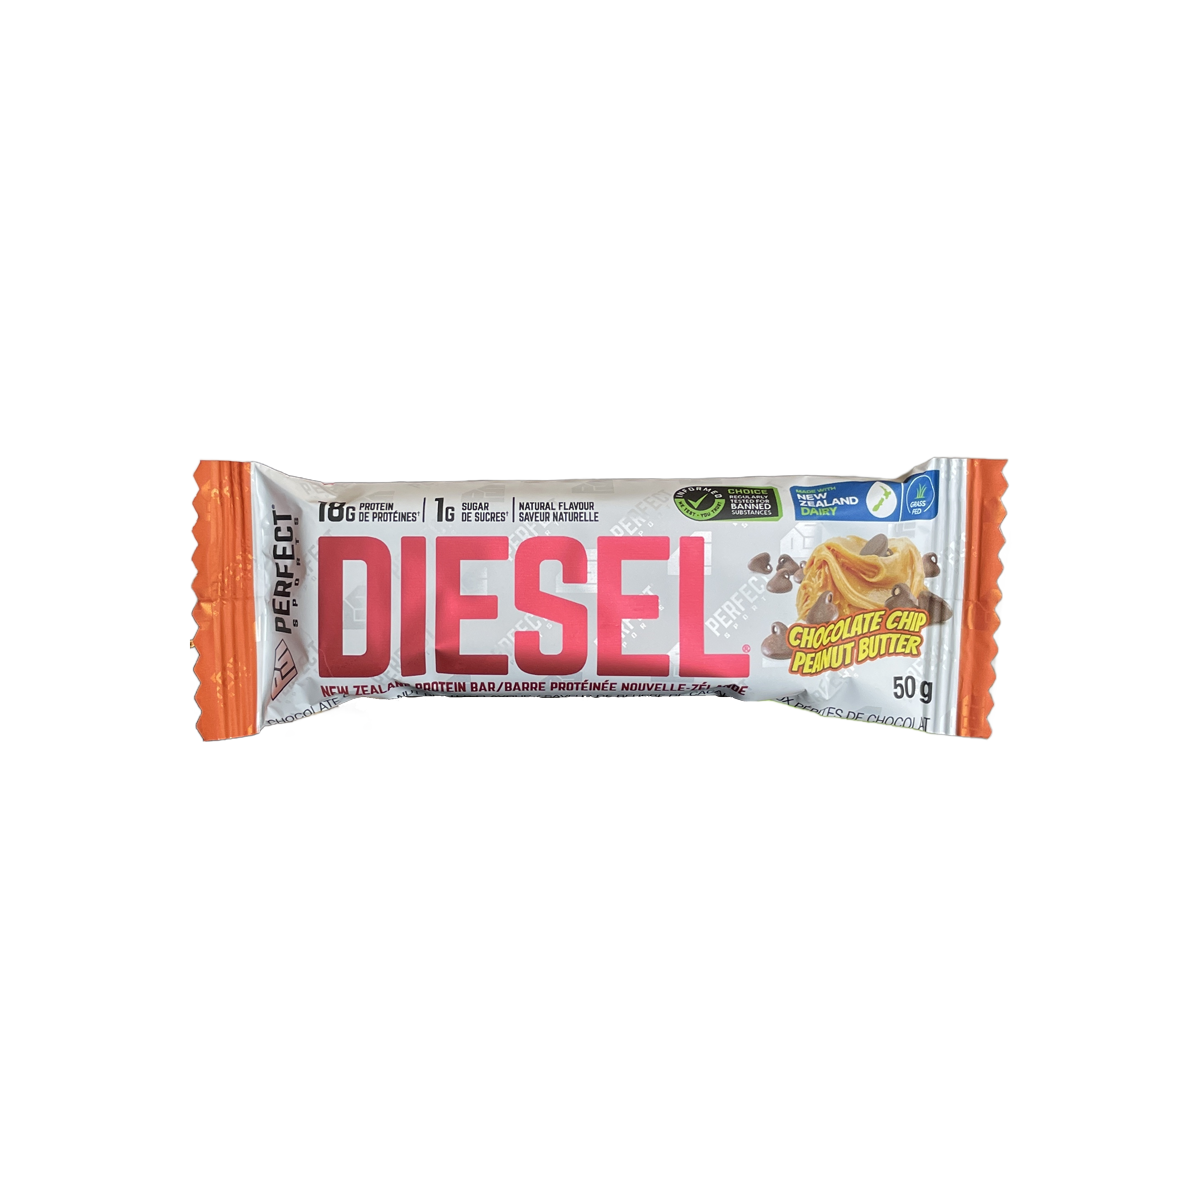 Diesel Protein Bar Chocolate Chip Peanut Butter 50g